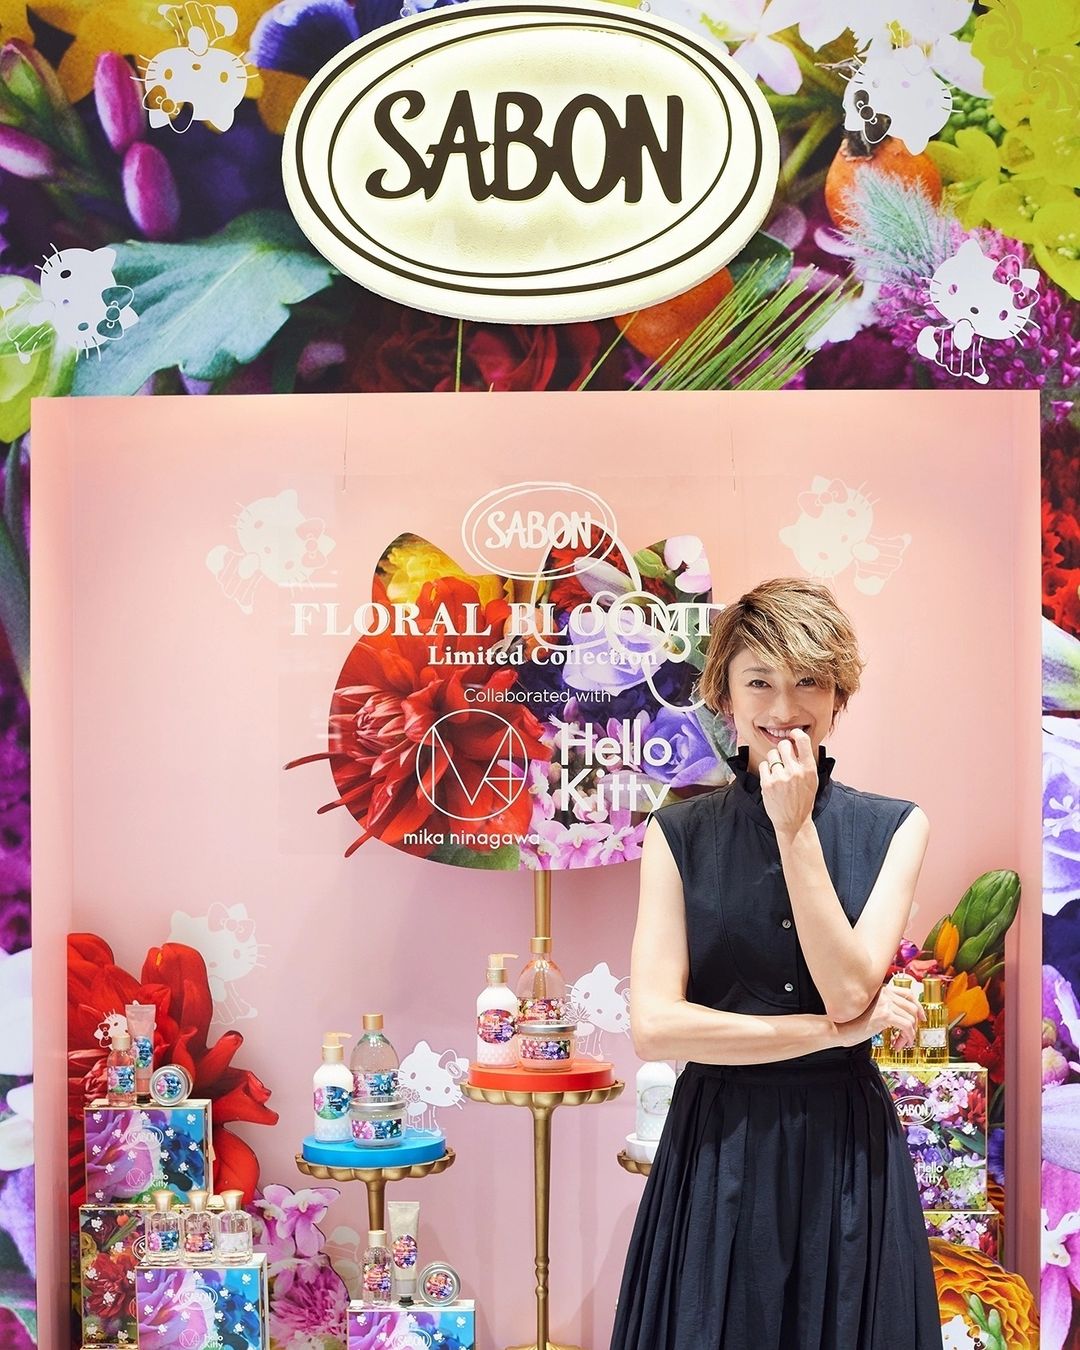 山田優 8 17まで伊勢丹新宿店に Sabon Floral Blooming Limited Collection先行販売 Pop Upが オープン Sabon Wacoca Japan People Life Style